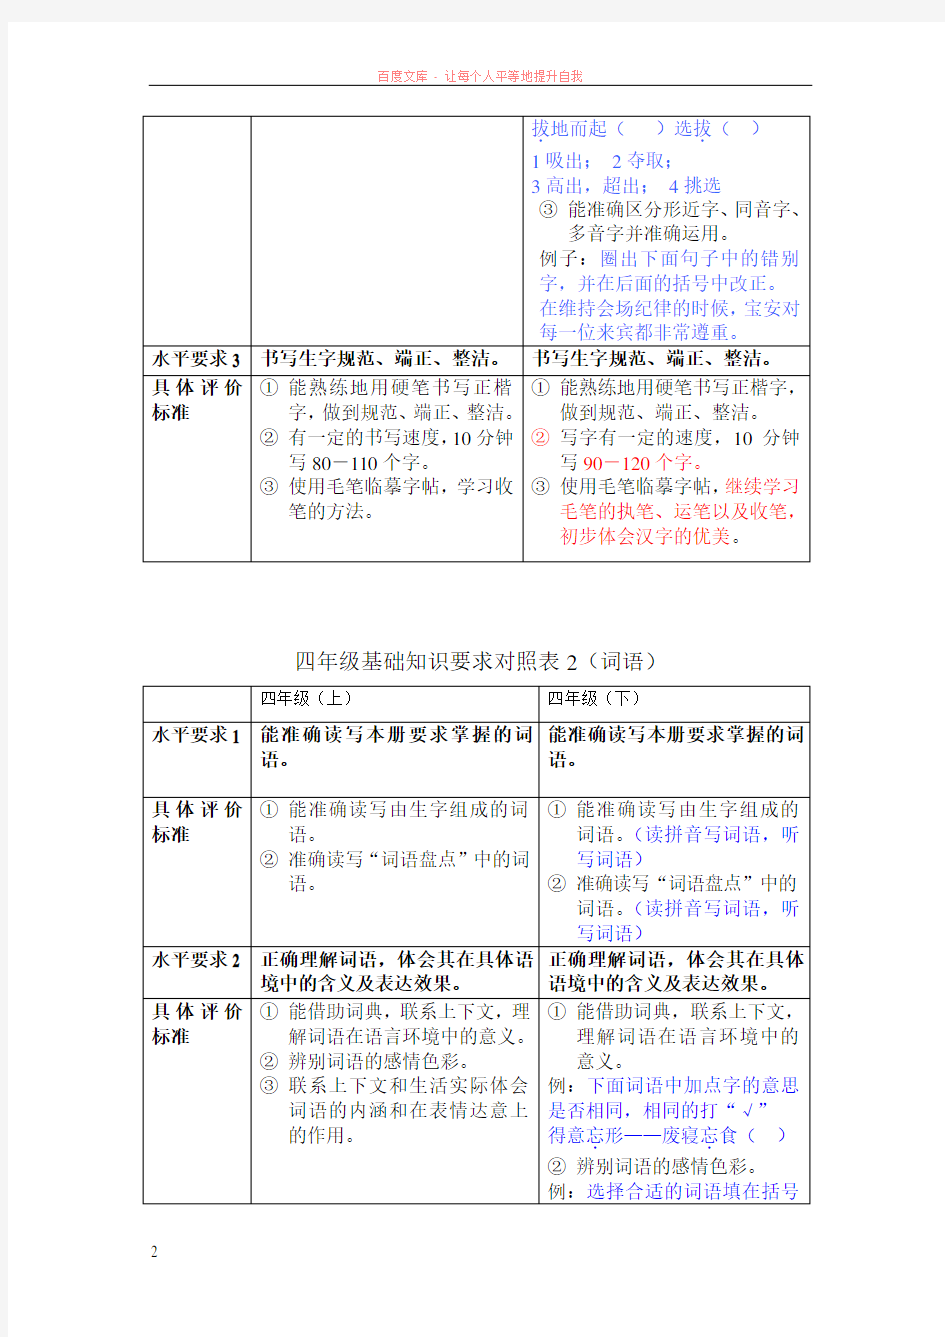 广州市学业质量评价标准知识点对照(四下基础知识)